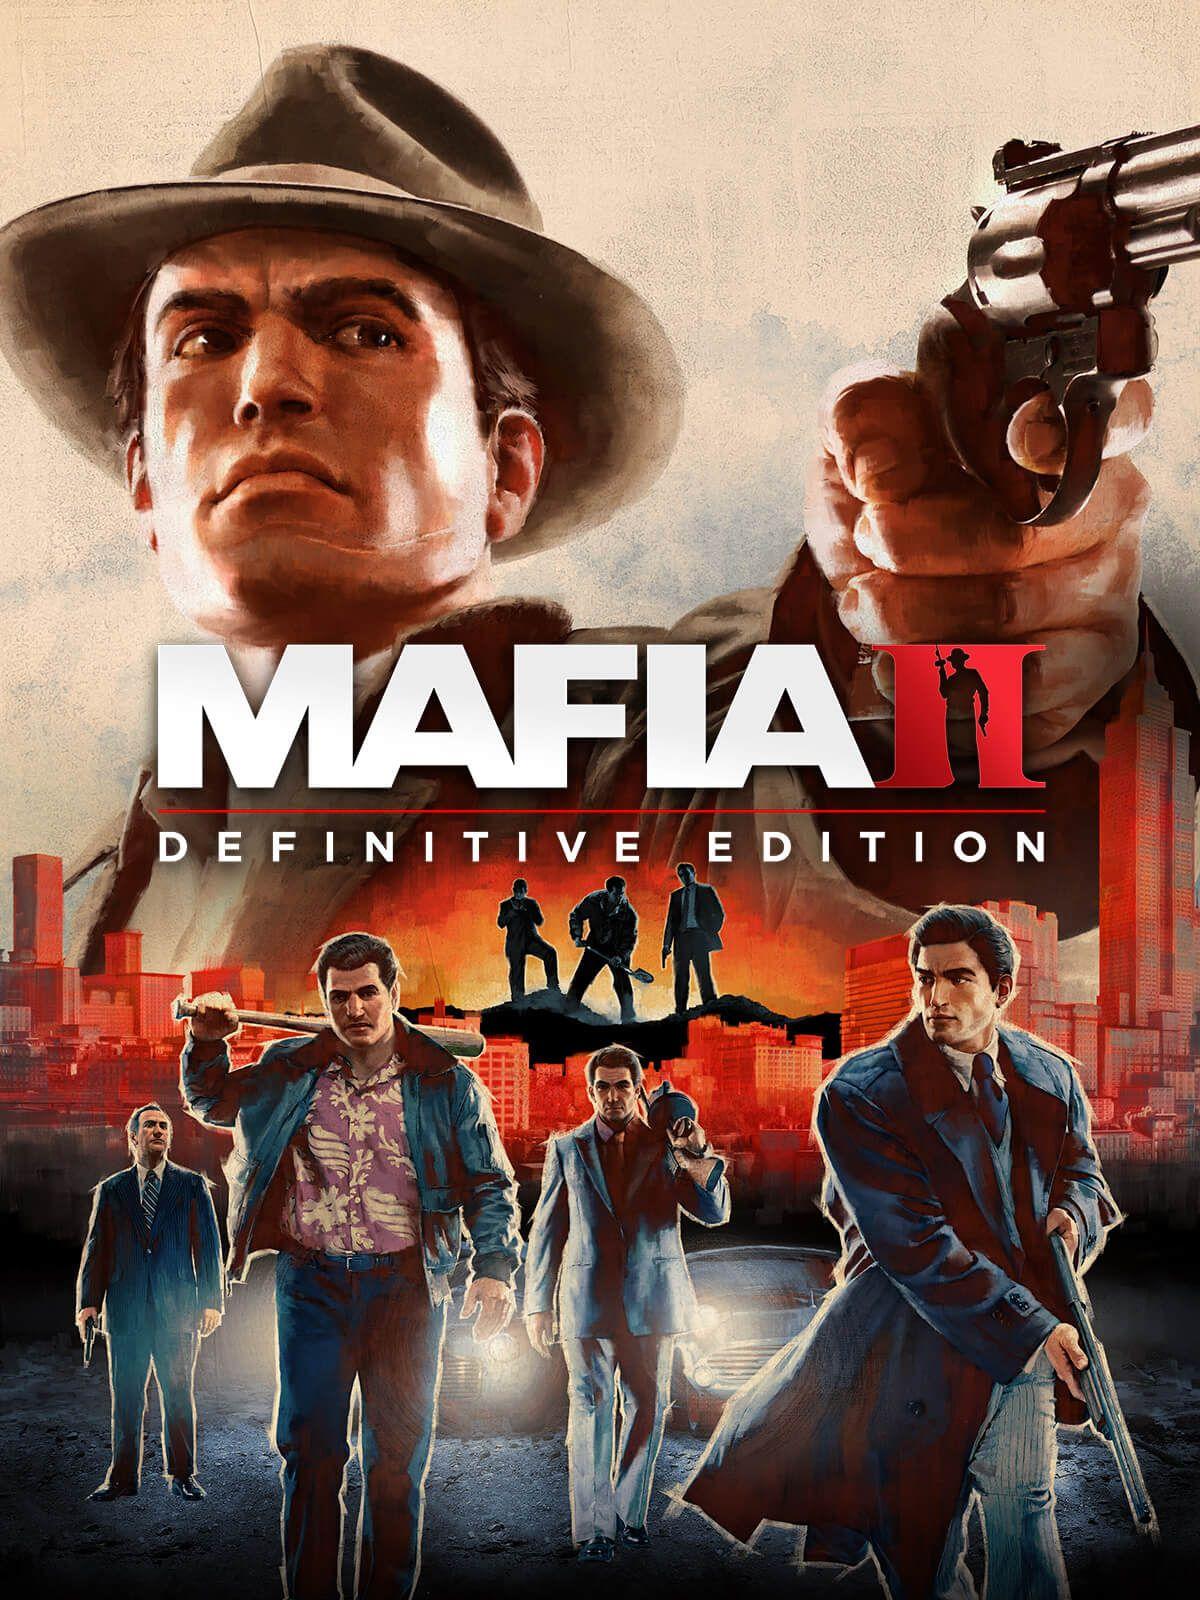 download free mafia definitive edition